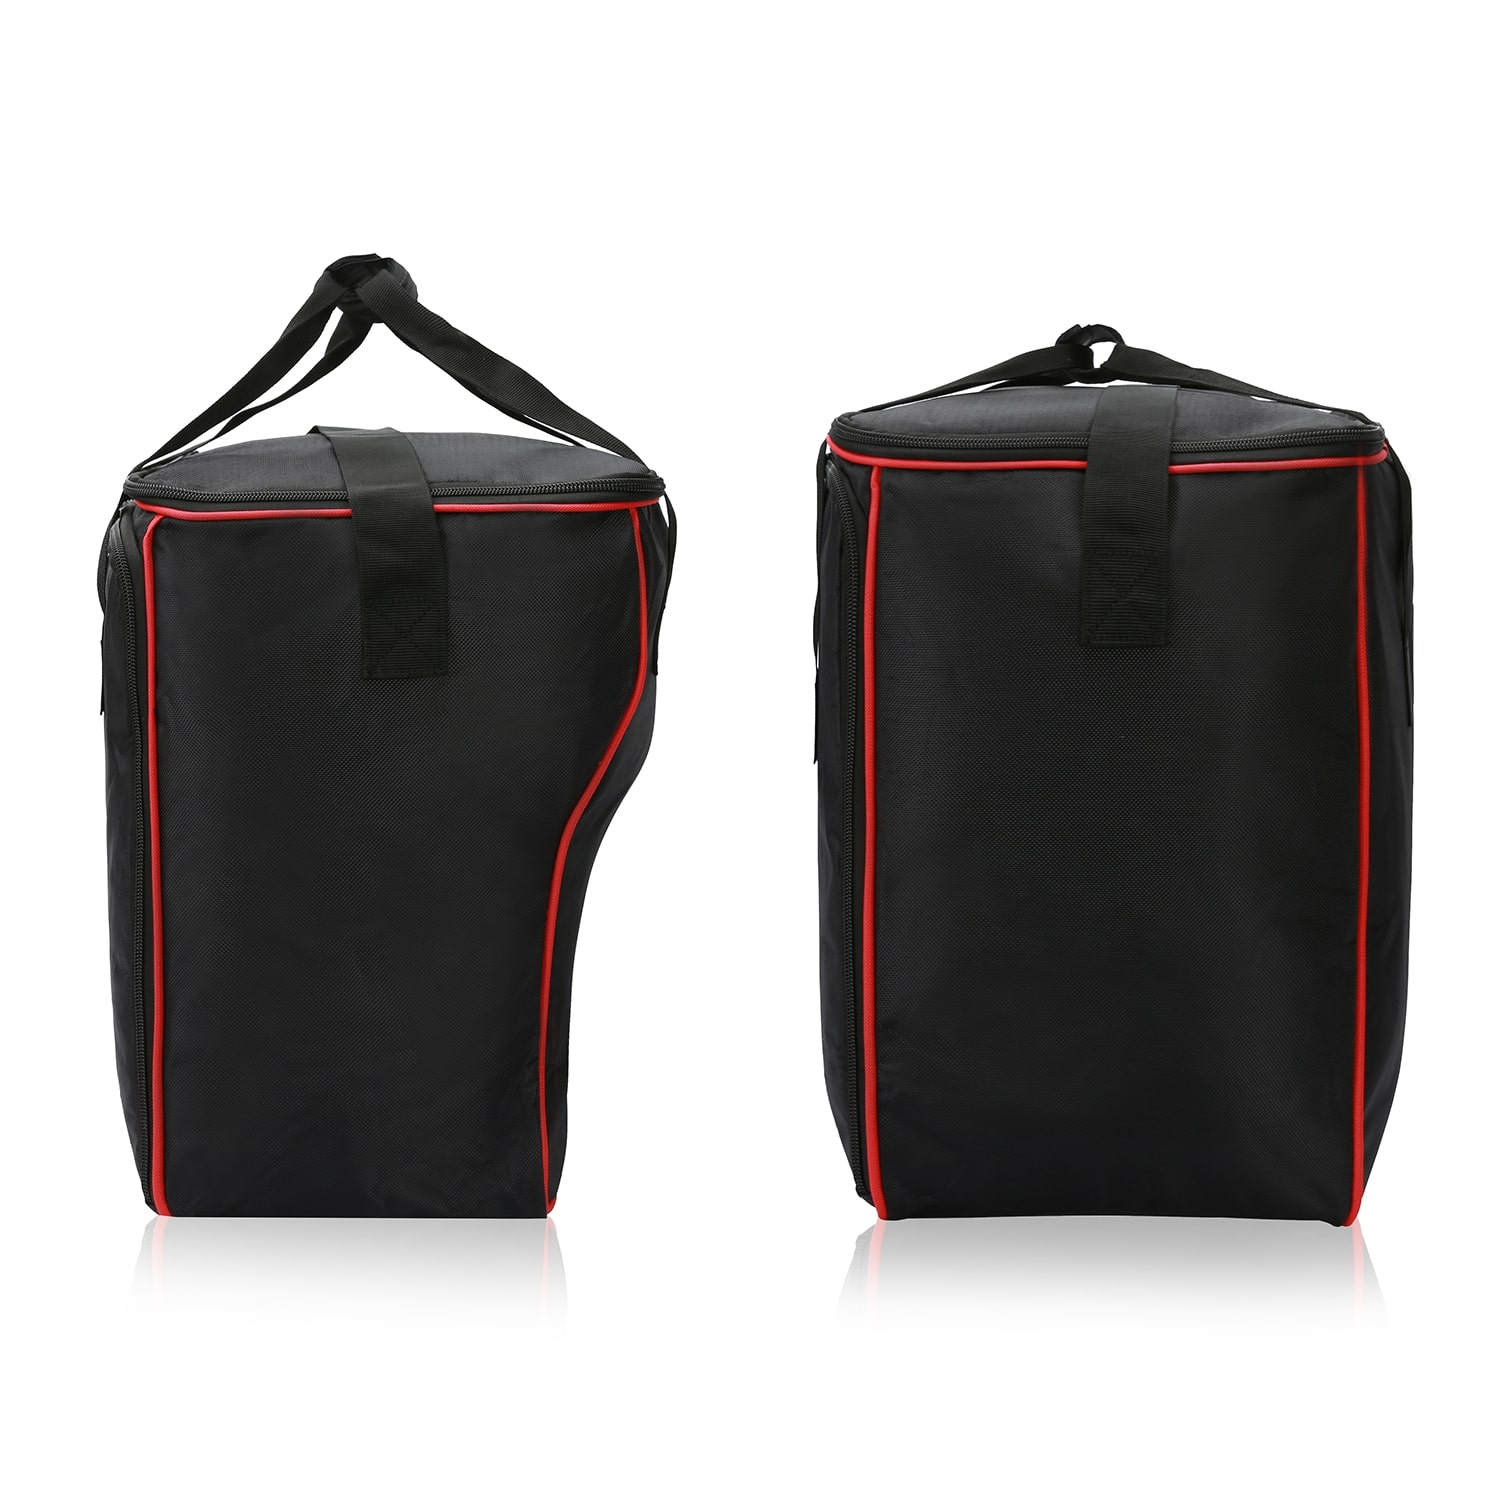 Inner bags for Ducati Multistrada as of 2015